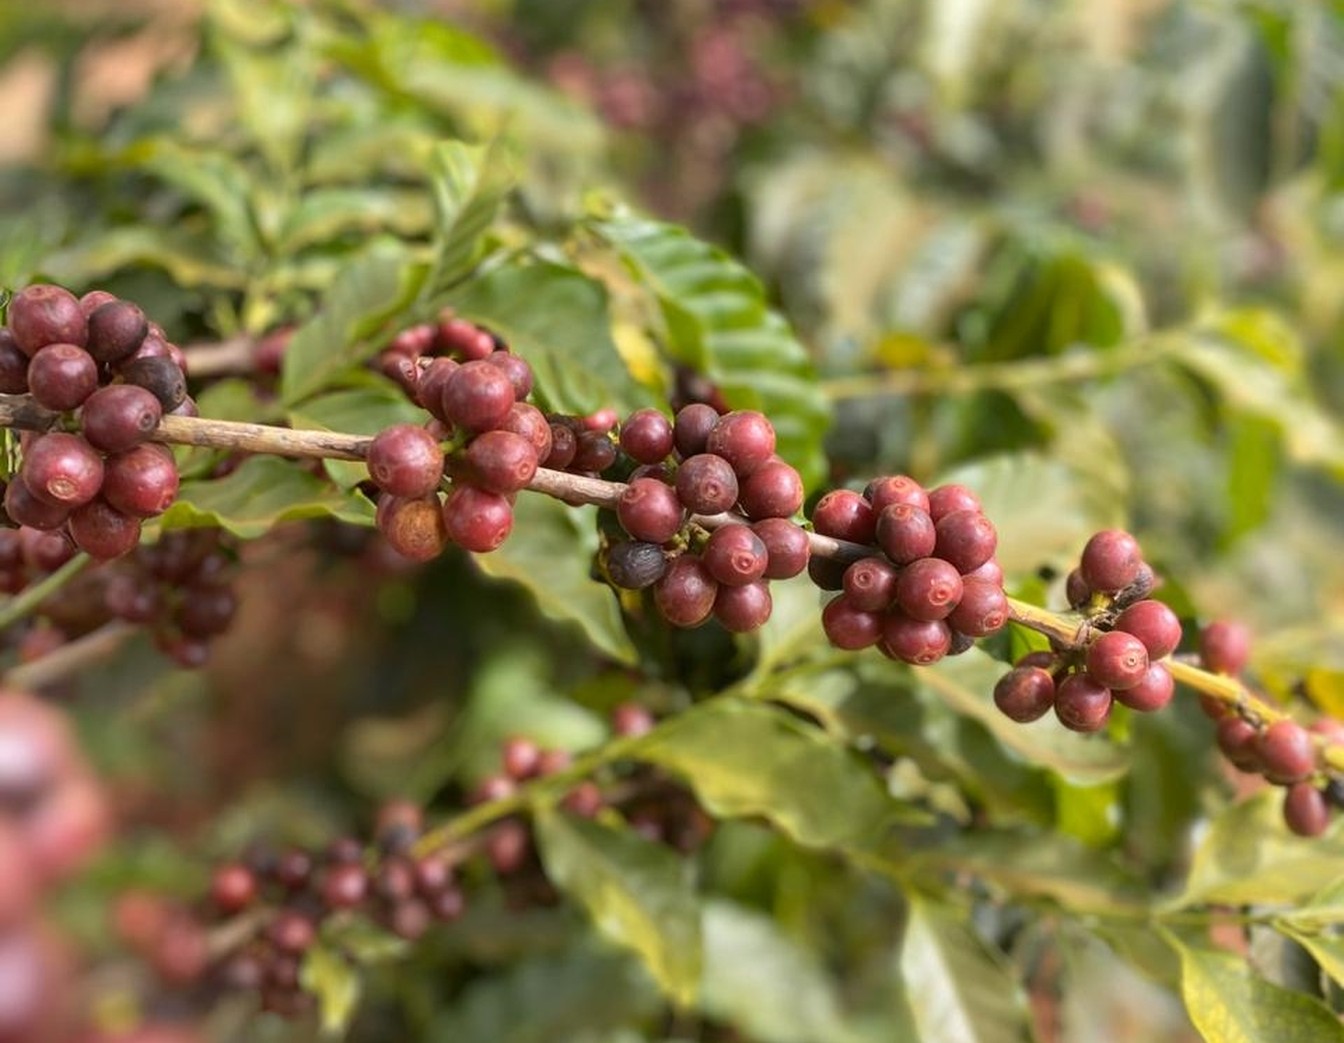 Colheita do café já começou: previsão é de colher cerca de 17 milhões de sacas no Sul de Minas